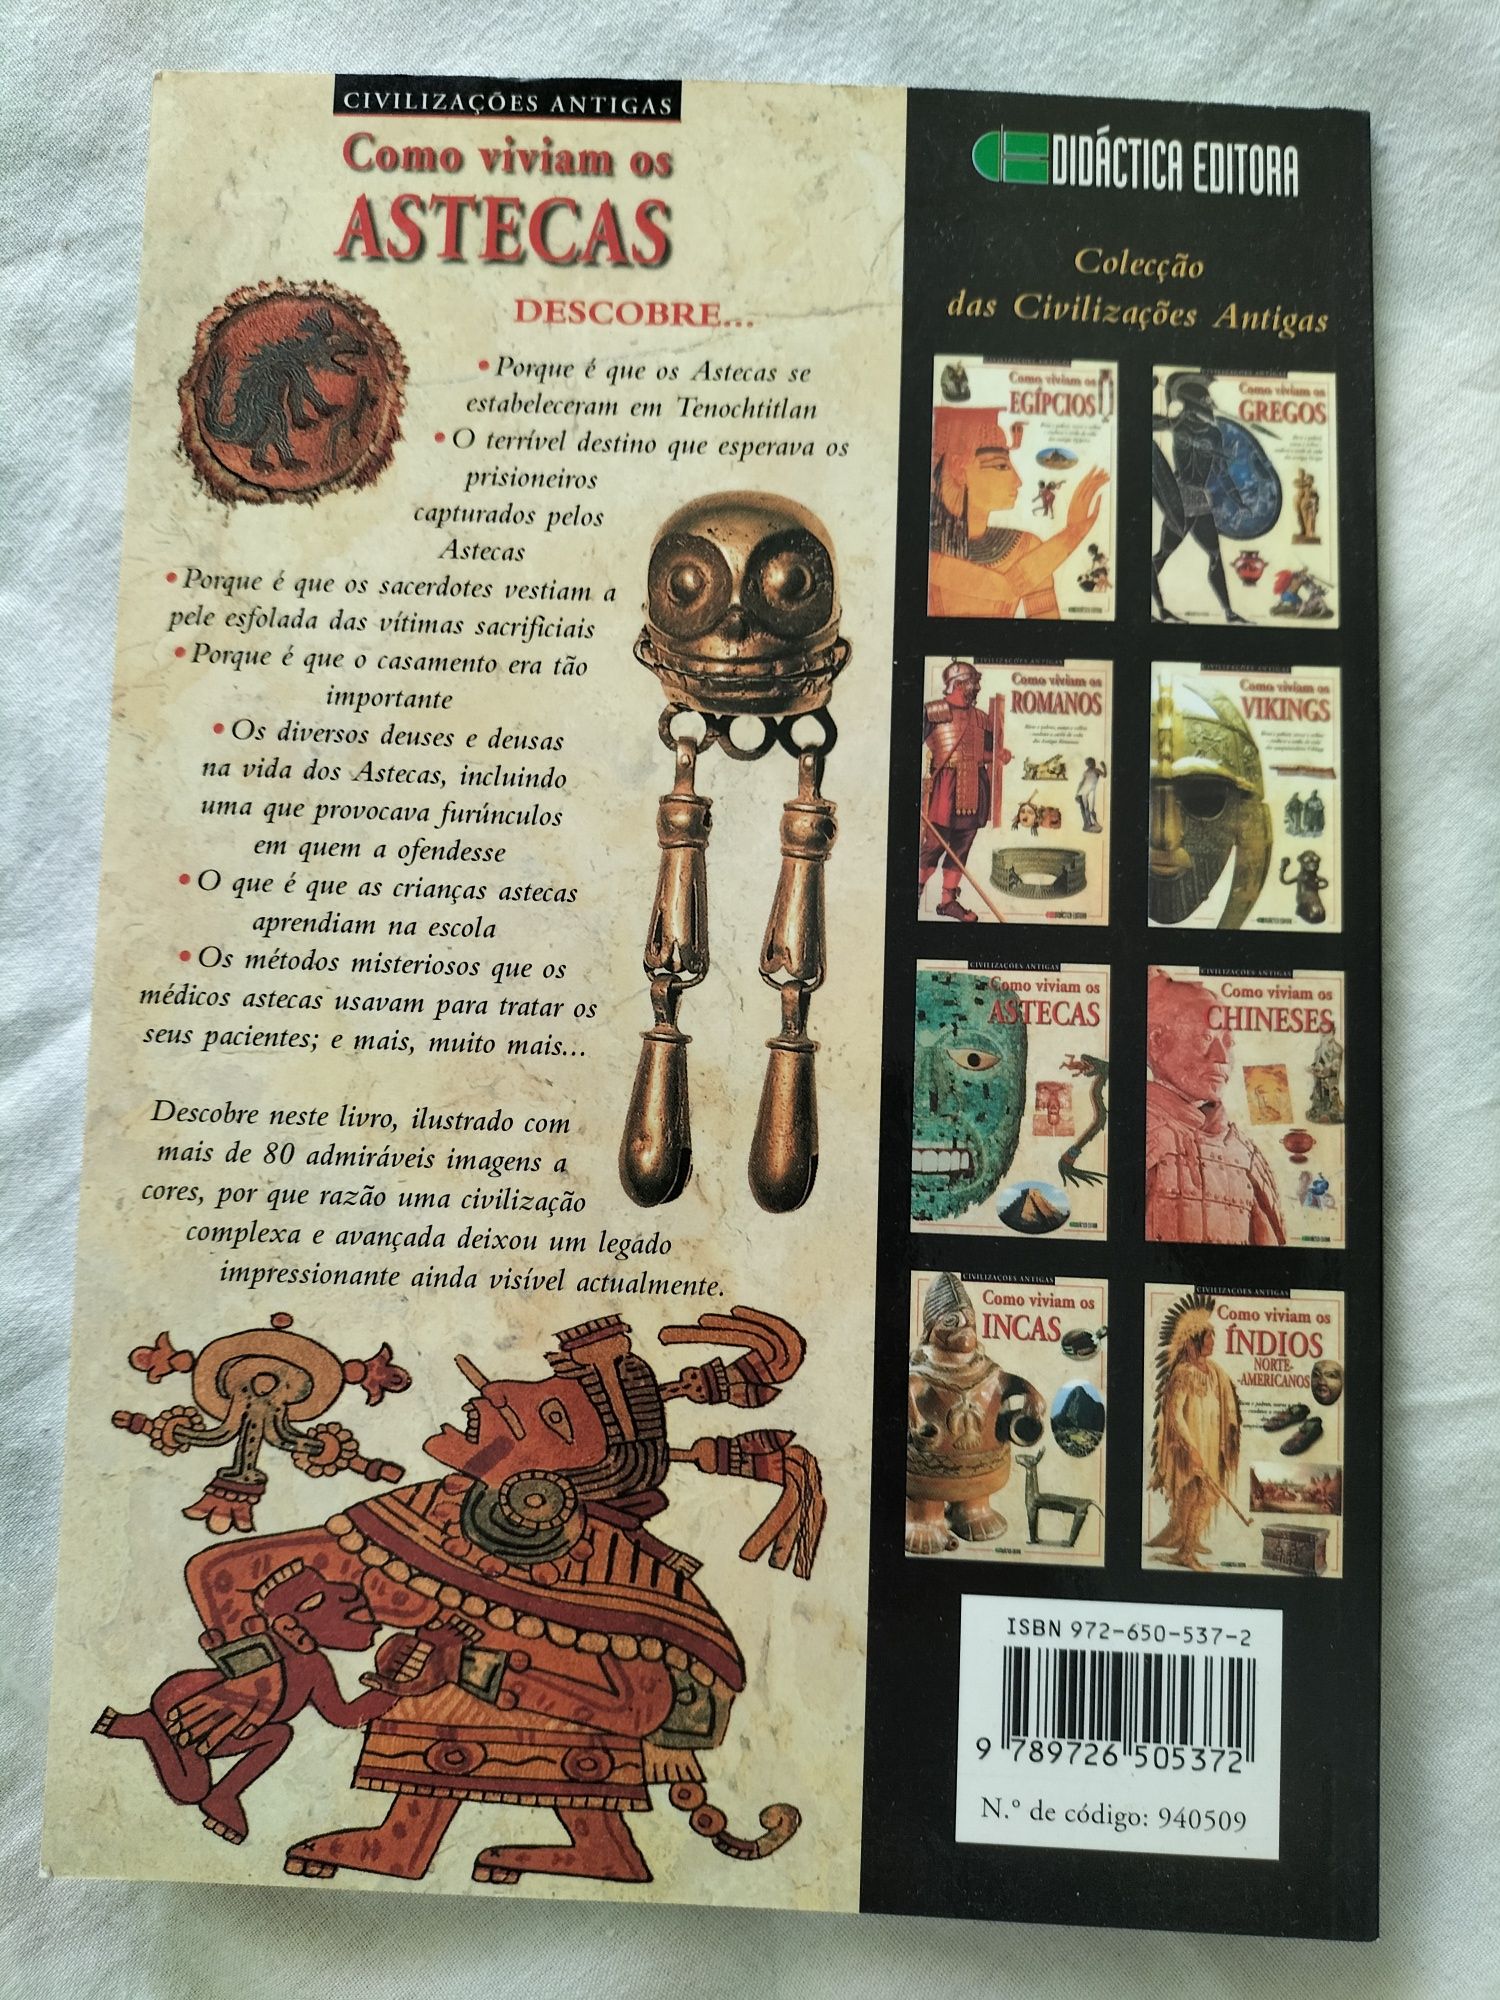 Livro " Como viviam os Astecas'